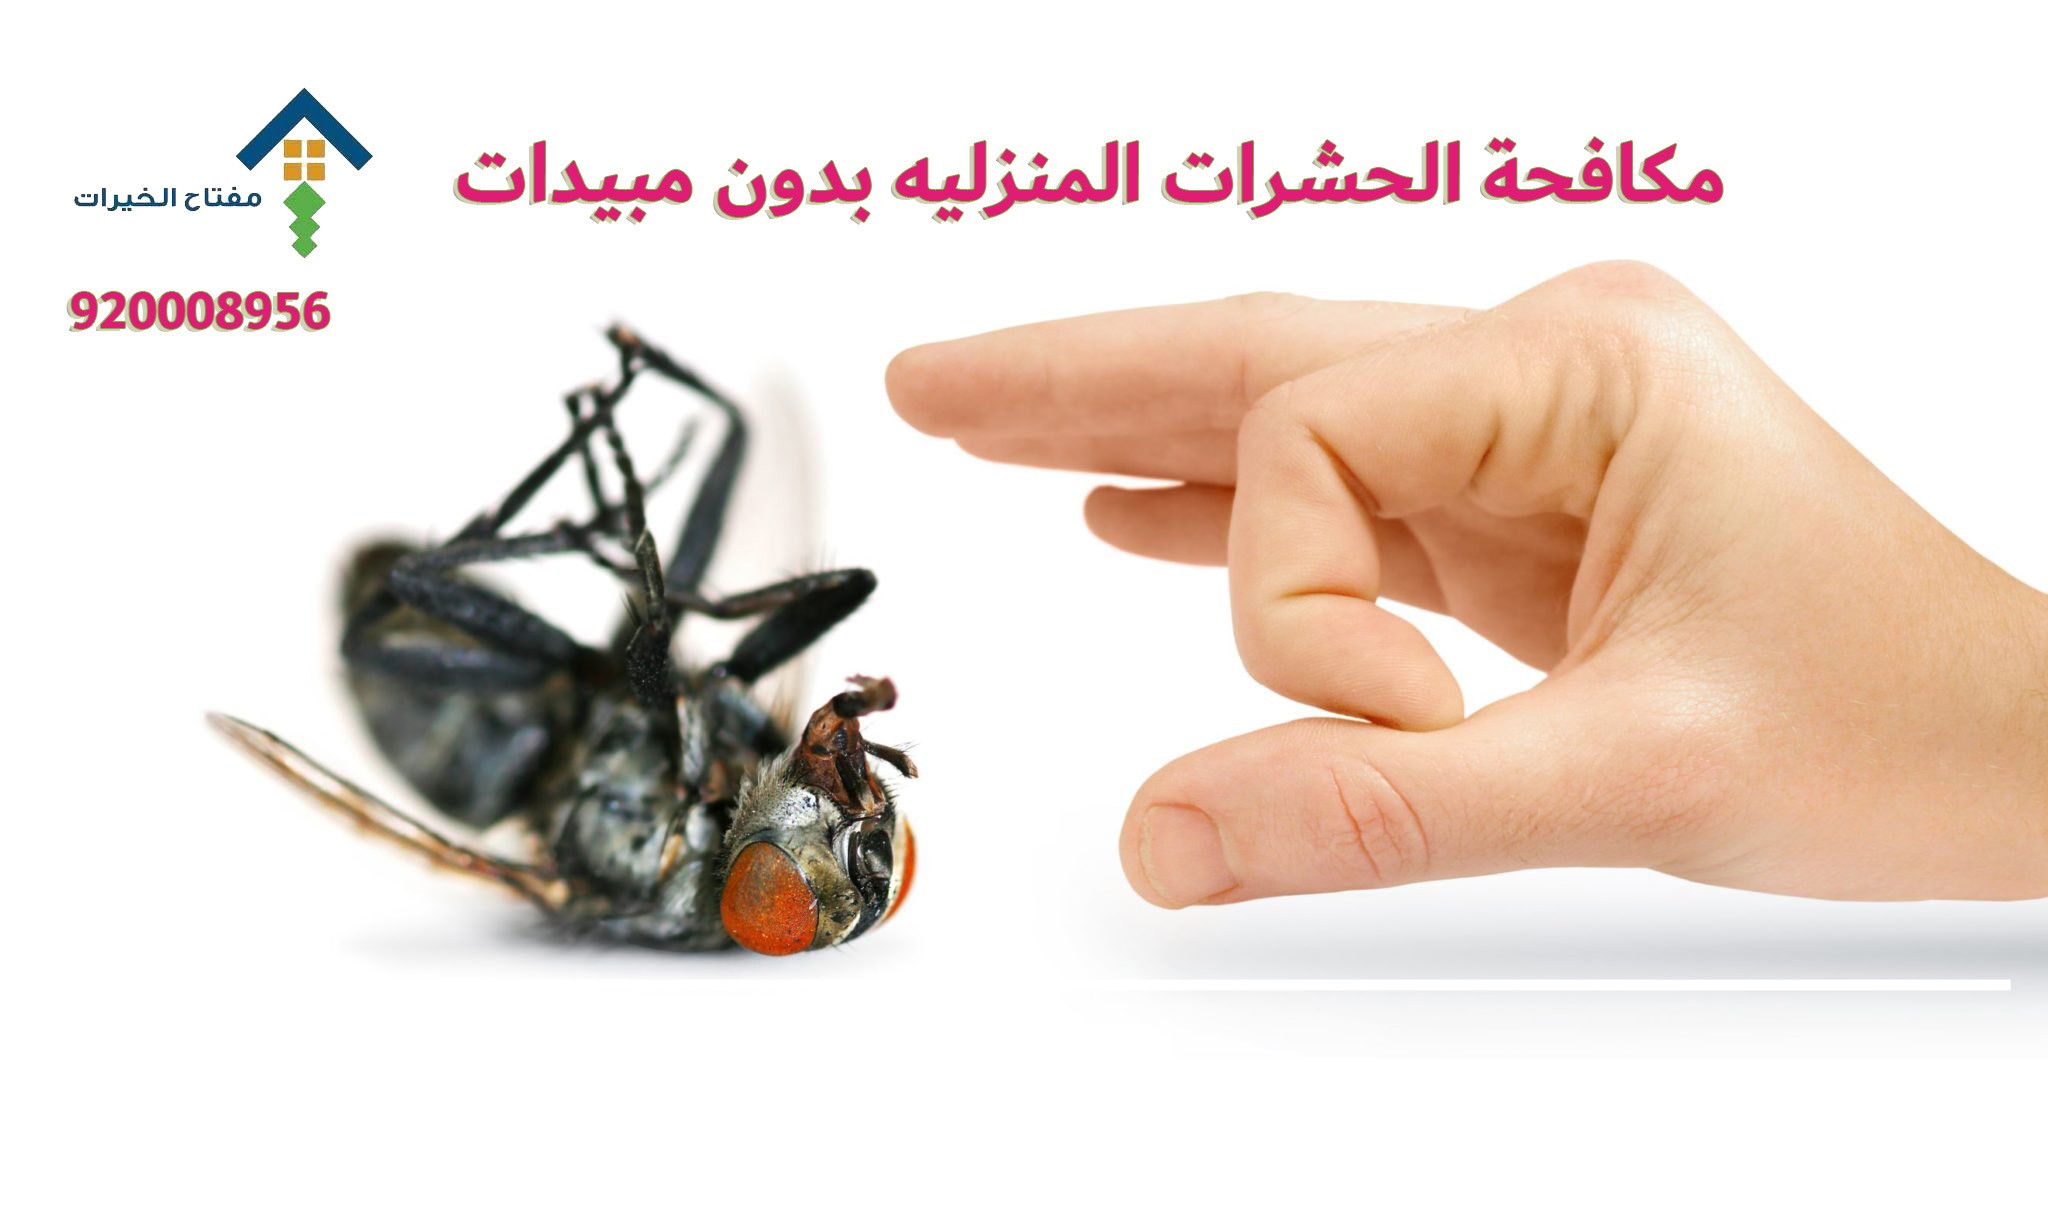 مكافحة الحشرات المنزليه بدون مبيدات 920008956